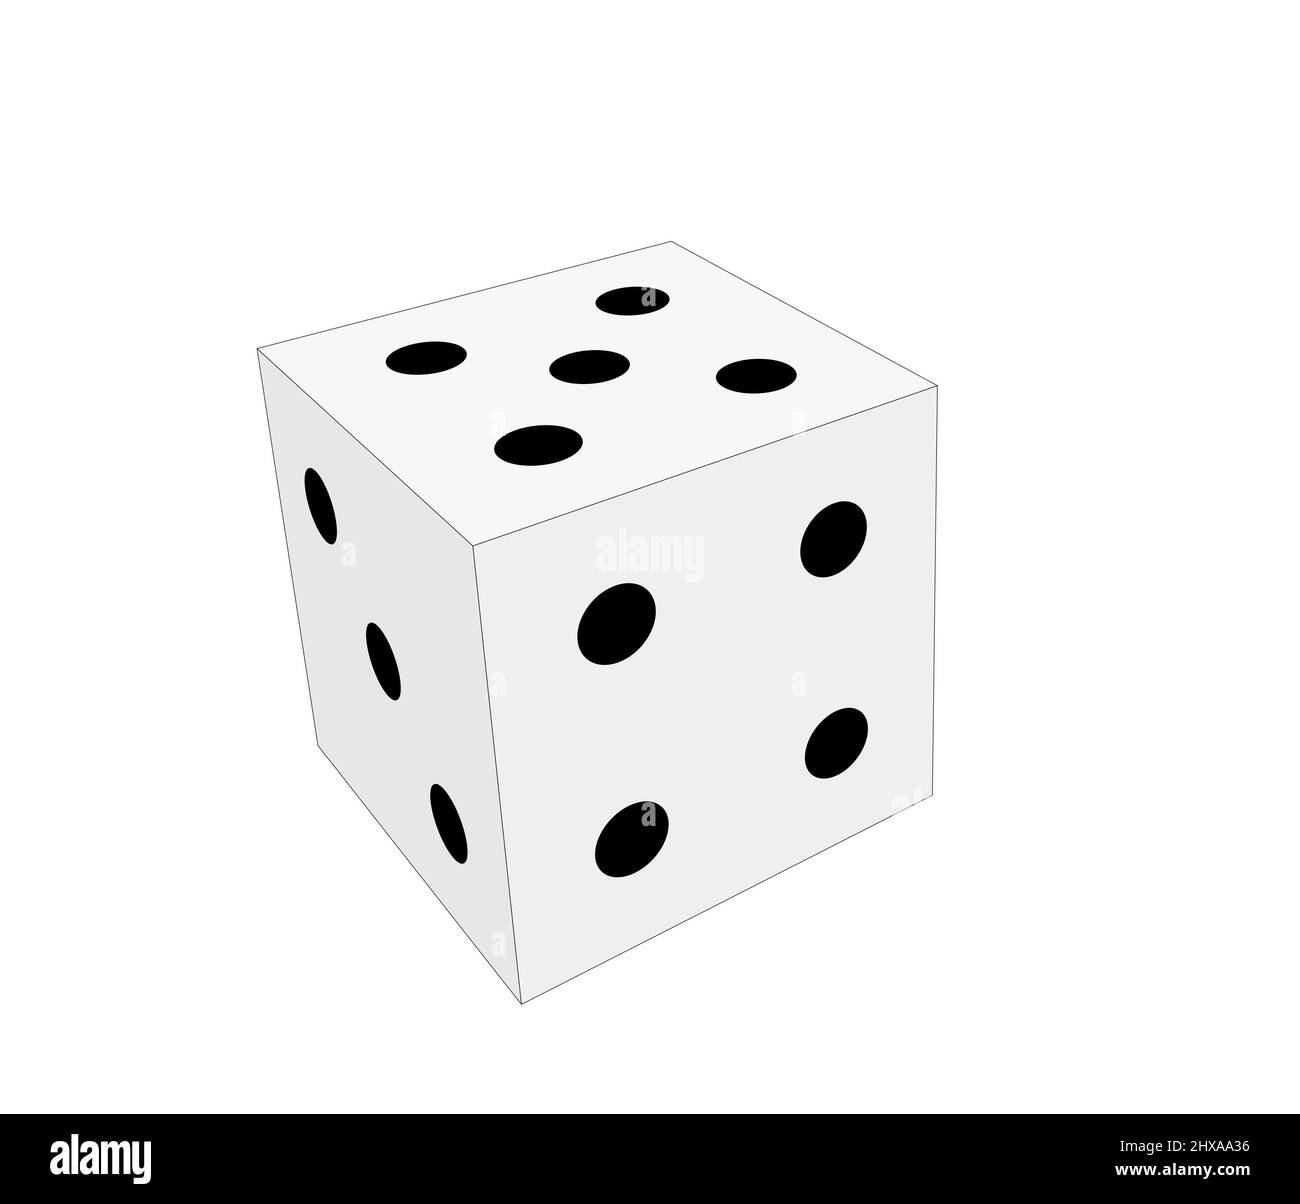 dadi semplici in bianco e nero con cinque, quattro e tre punti. 3d illustrazione della vista in prospettiva isolata su sfondo bianco Foto Stock